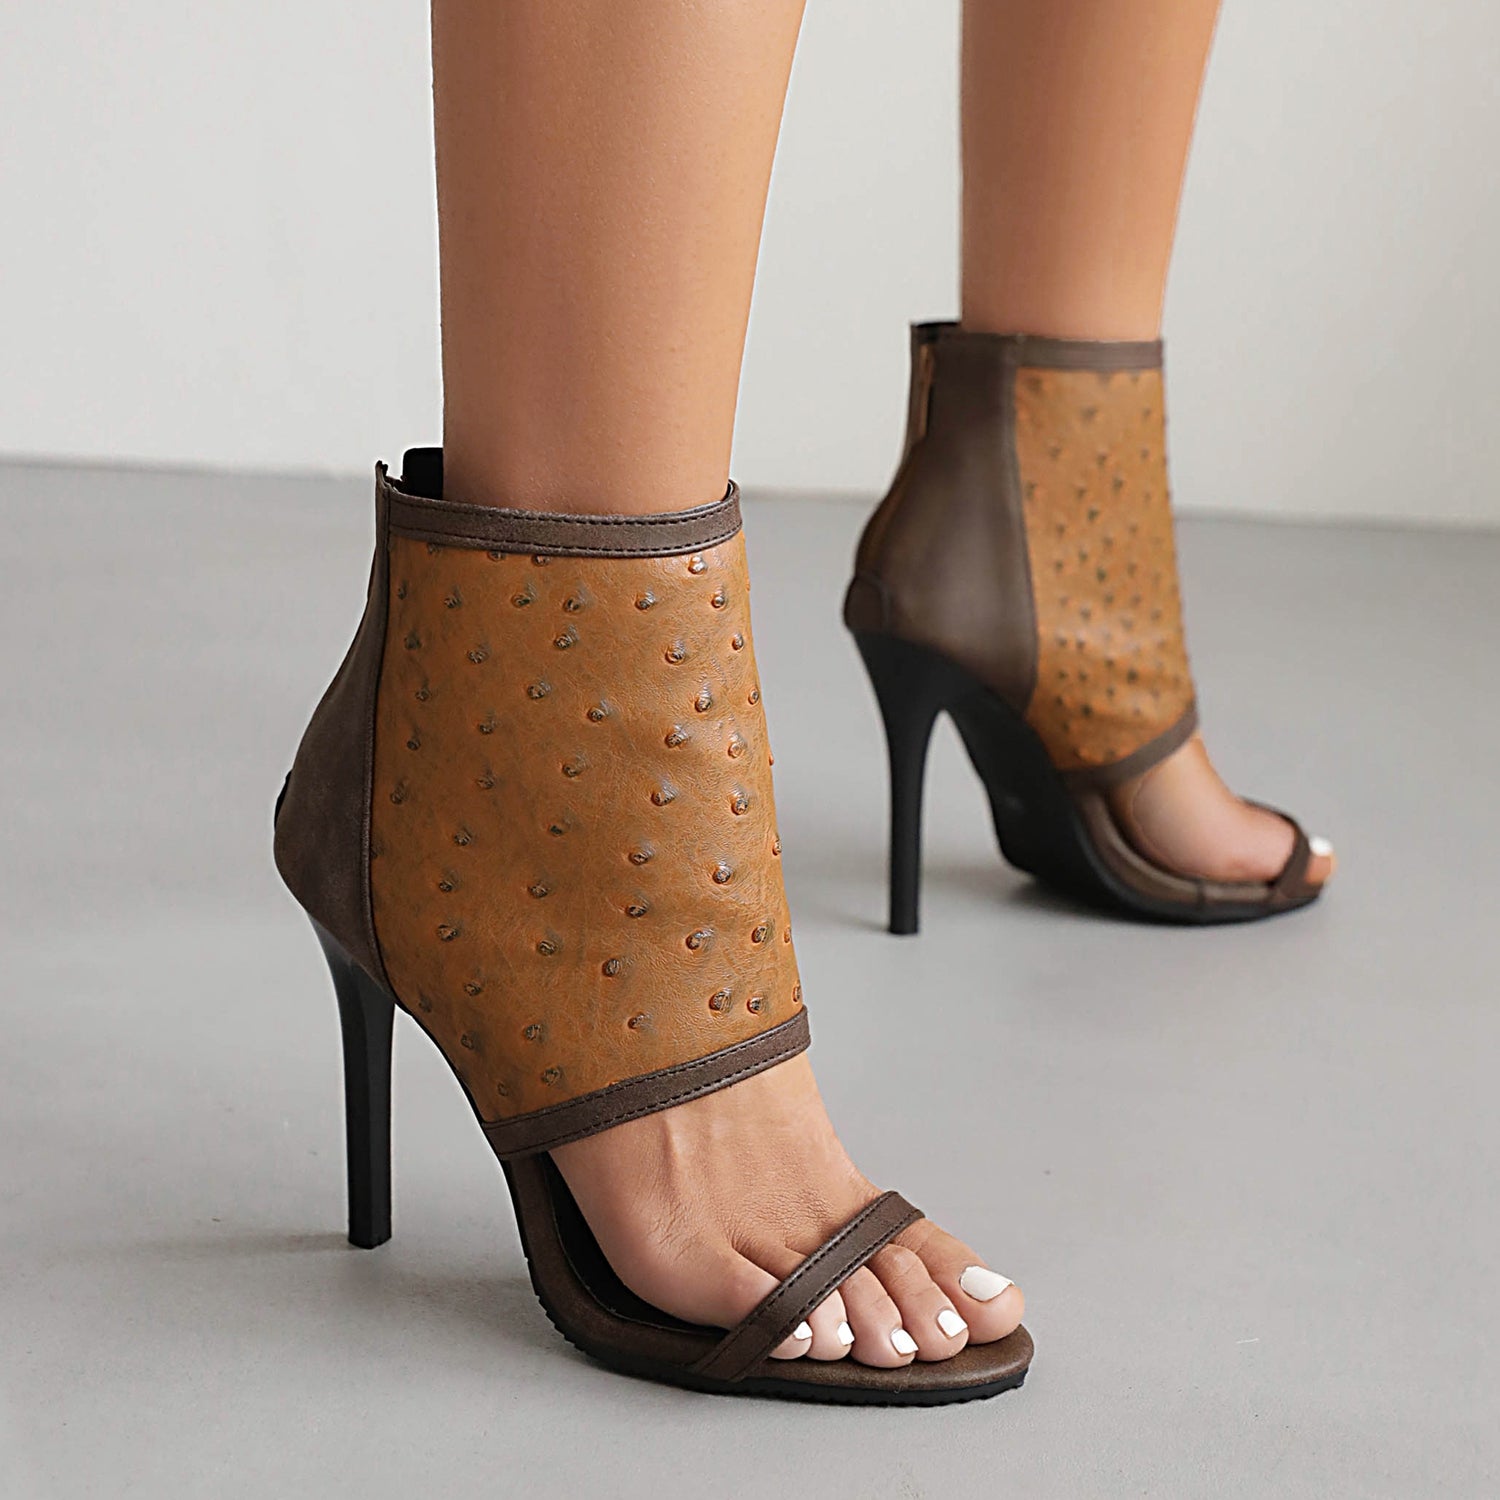 Bigsizeheels Stiletto Heel Zipper Suede Upper Ankle Strap Sandals - Coffee best oversized womens heels are from bigsizeheel®